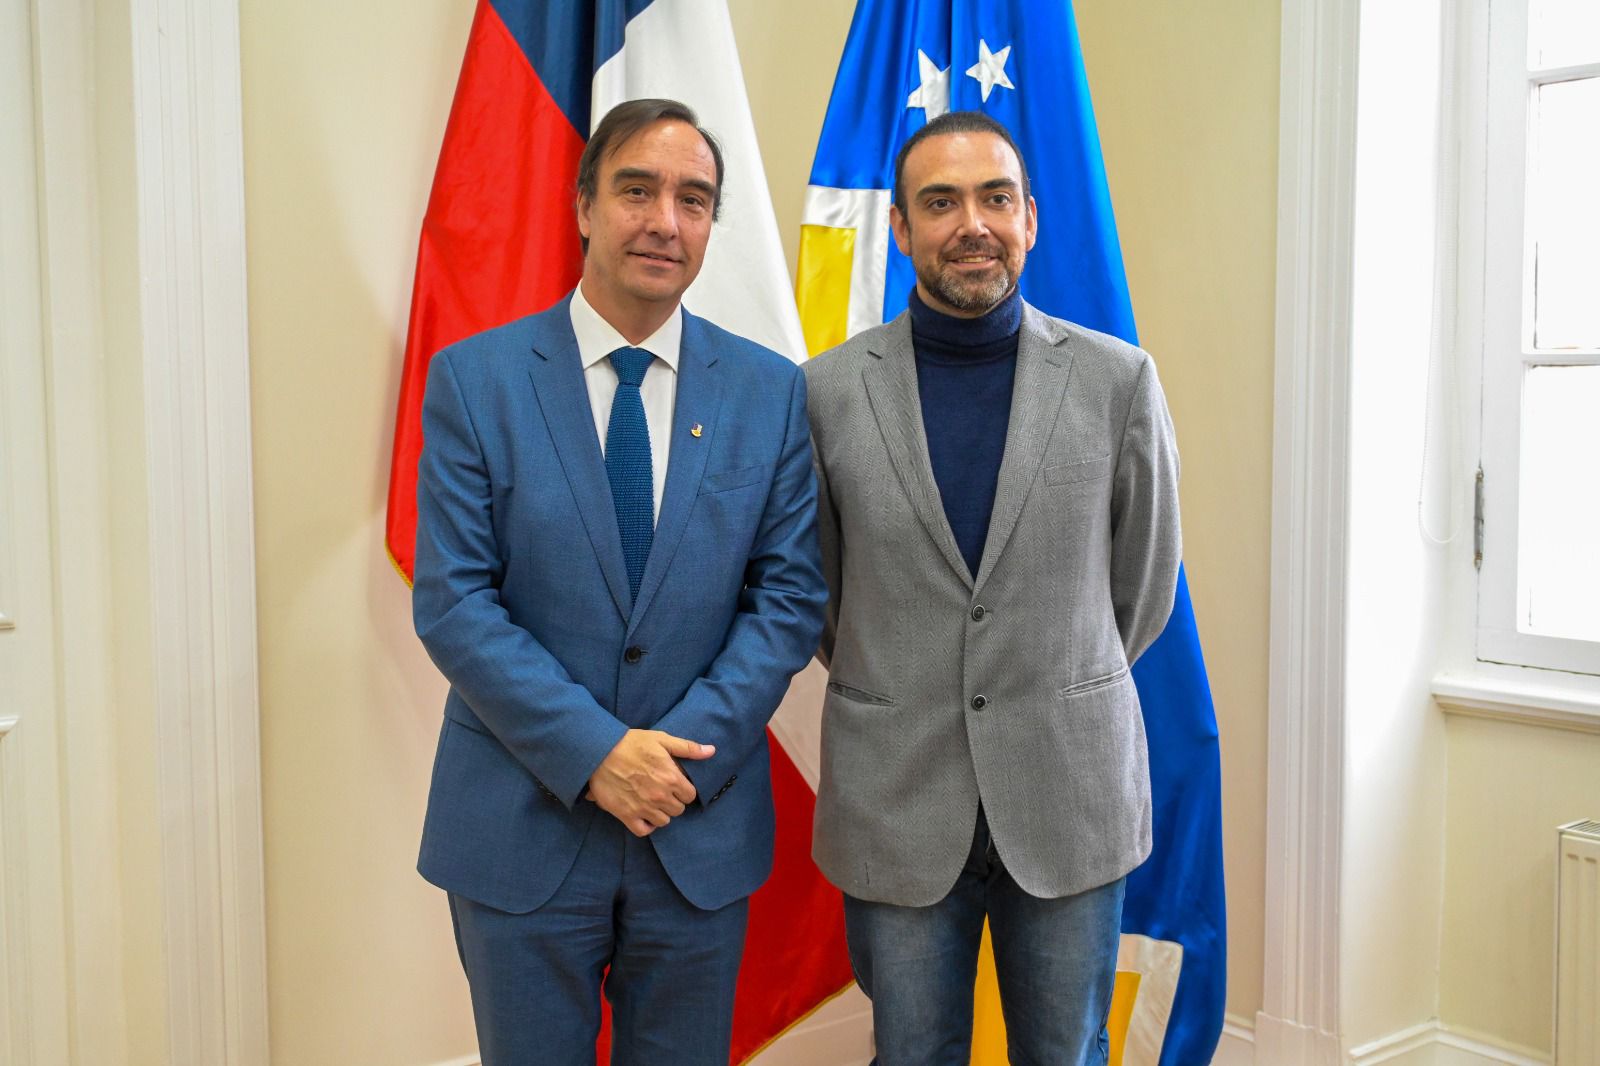 Gobernador Jorge Flies y senador Karim Bianchi acuerdan trabajo en conjunto para el desarrollo de Magallanes, zona extrema, y buscan realizar un proyecto dental para la comunidad